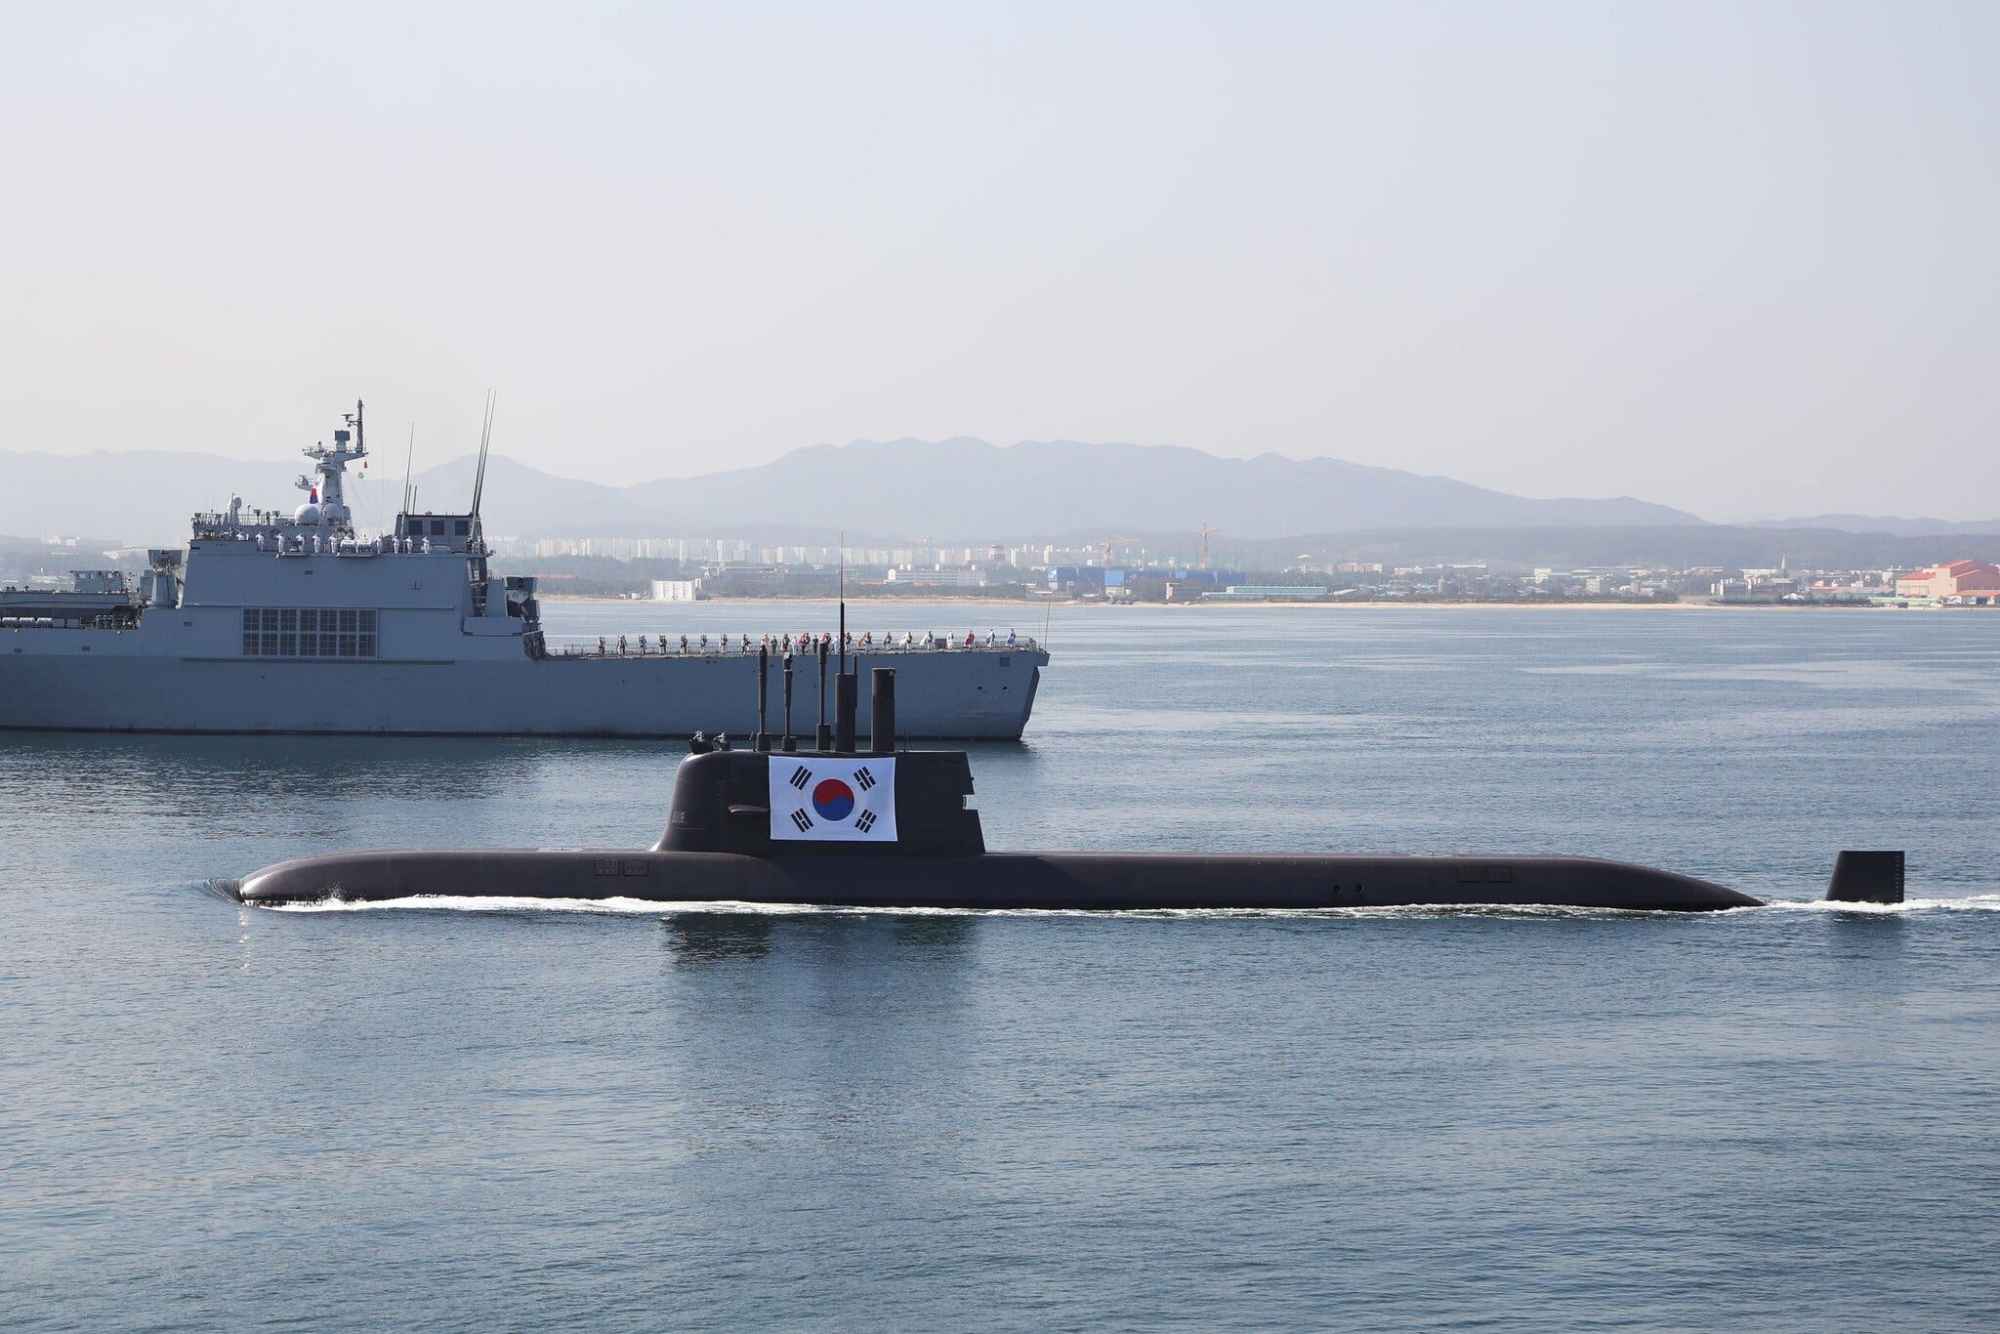 常规动力潜艇难堪大任,韩国要和五常一样,拥有自己的核动力潜艇